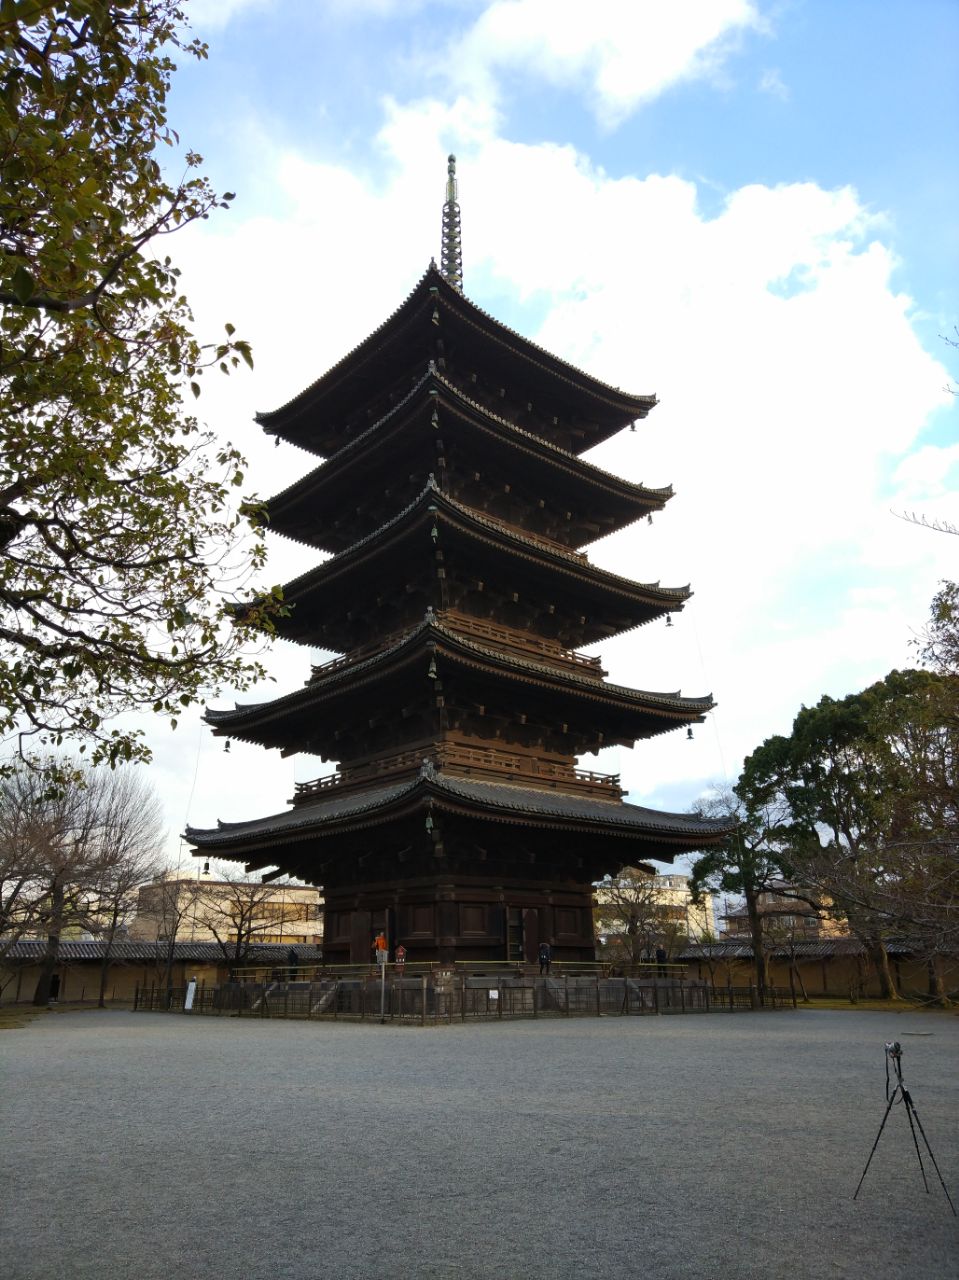 东寺是一座历史悠久的寺庙,听说是建在日本的平安时代